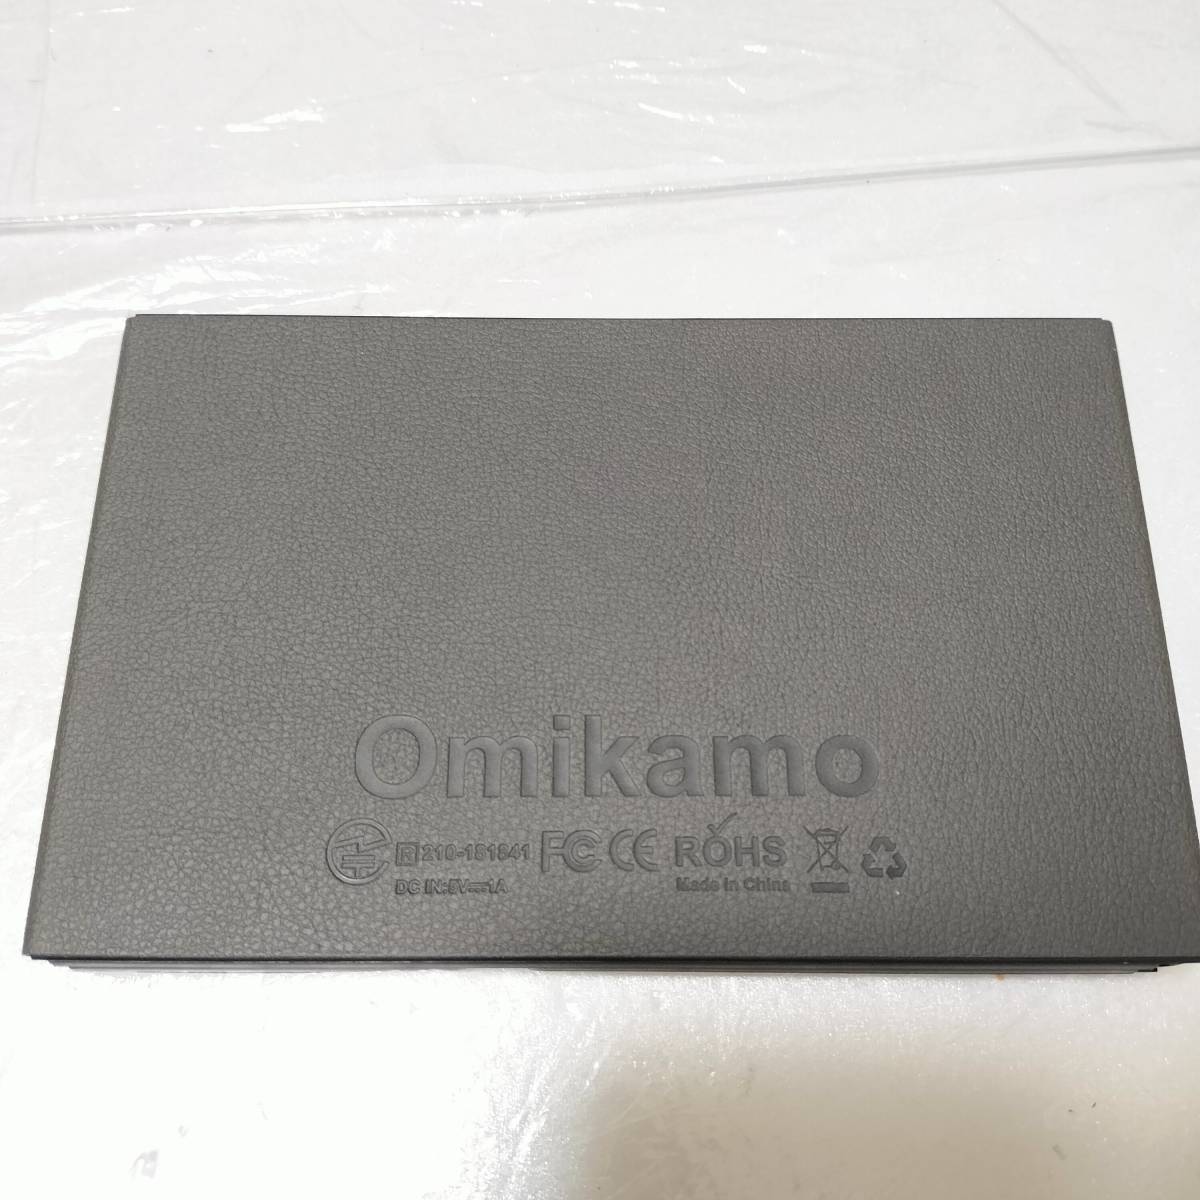 【1円オークション】 Omikamo B099 キーボード 折り畳み式 ワイヤレス キーボード テンキー付き 無線 軽量 TS01A002607_画像4